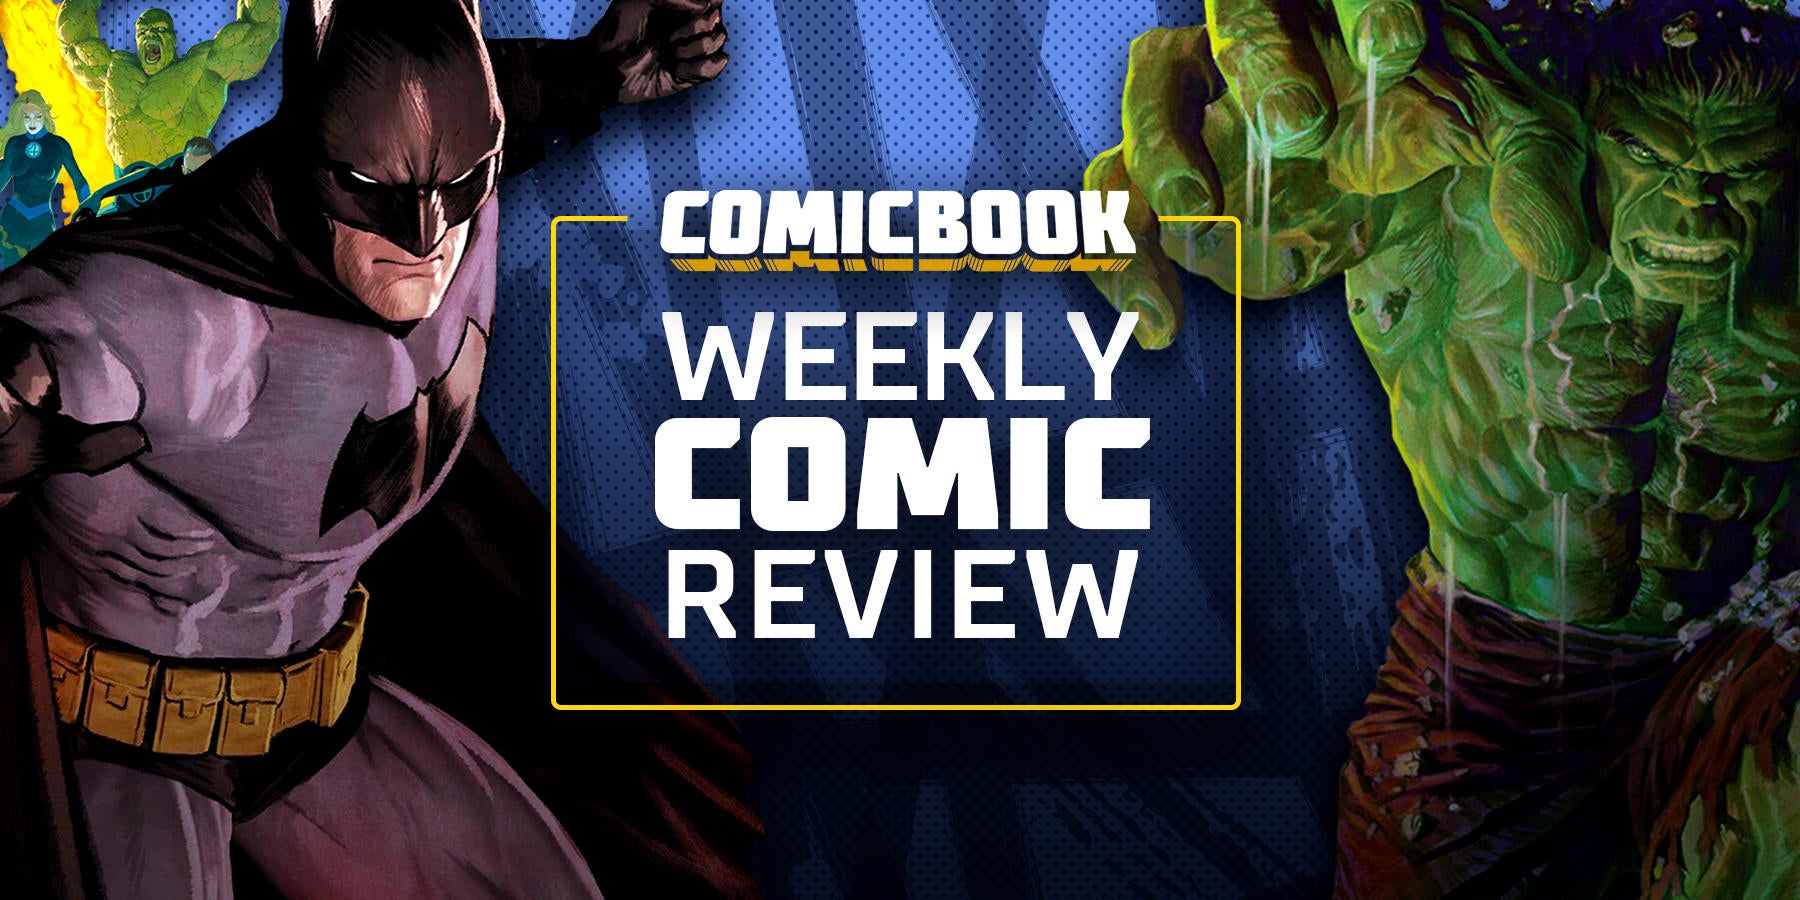 Weird Science DC Comics: Shadow War: Alpha #1 Review